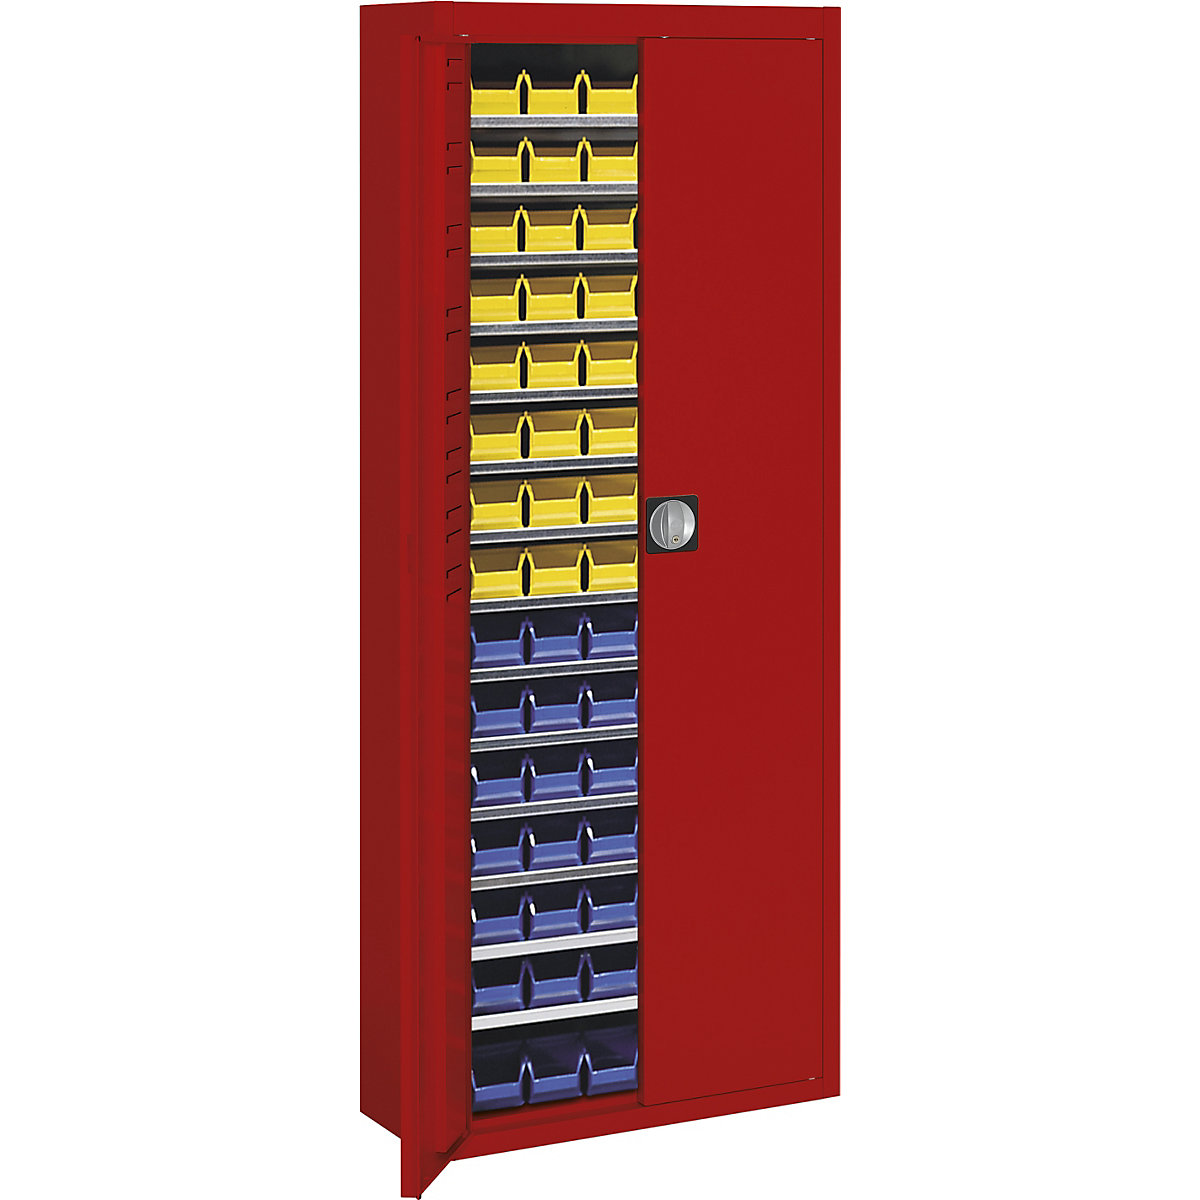 Skladiščna omara z odprtimi skladiščnimi posodami – mauser, VxŠxG 1740 x 680 x 280 mm, ena barva, rdeča, 90 posod-3